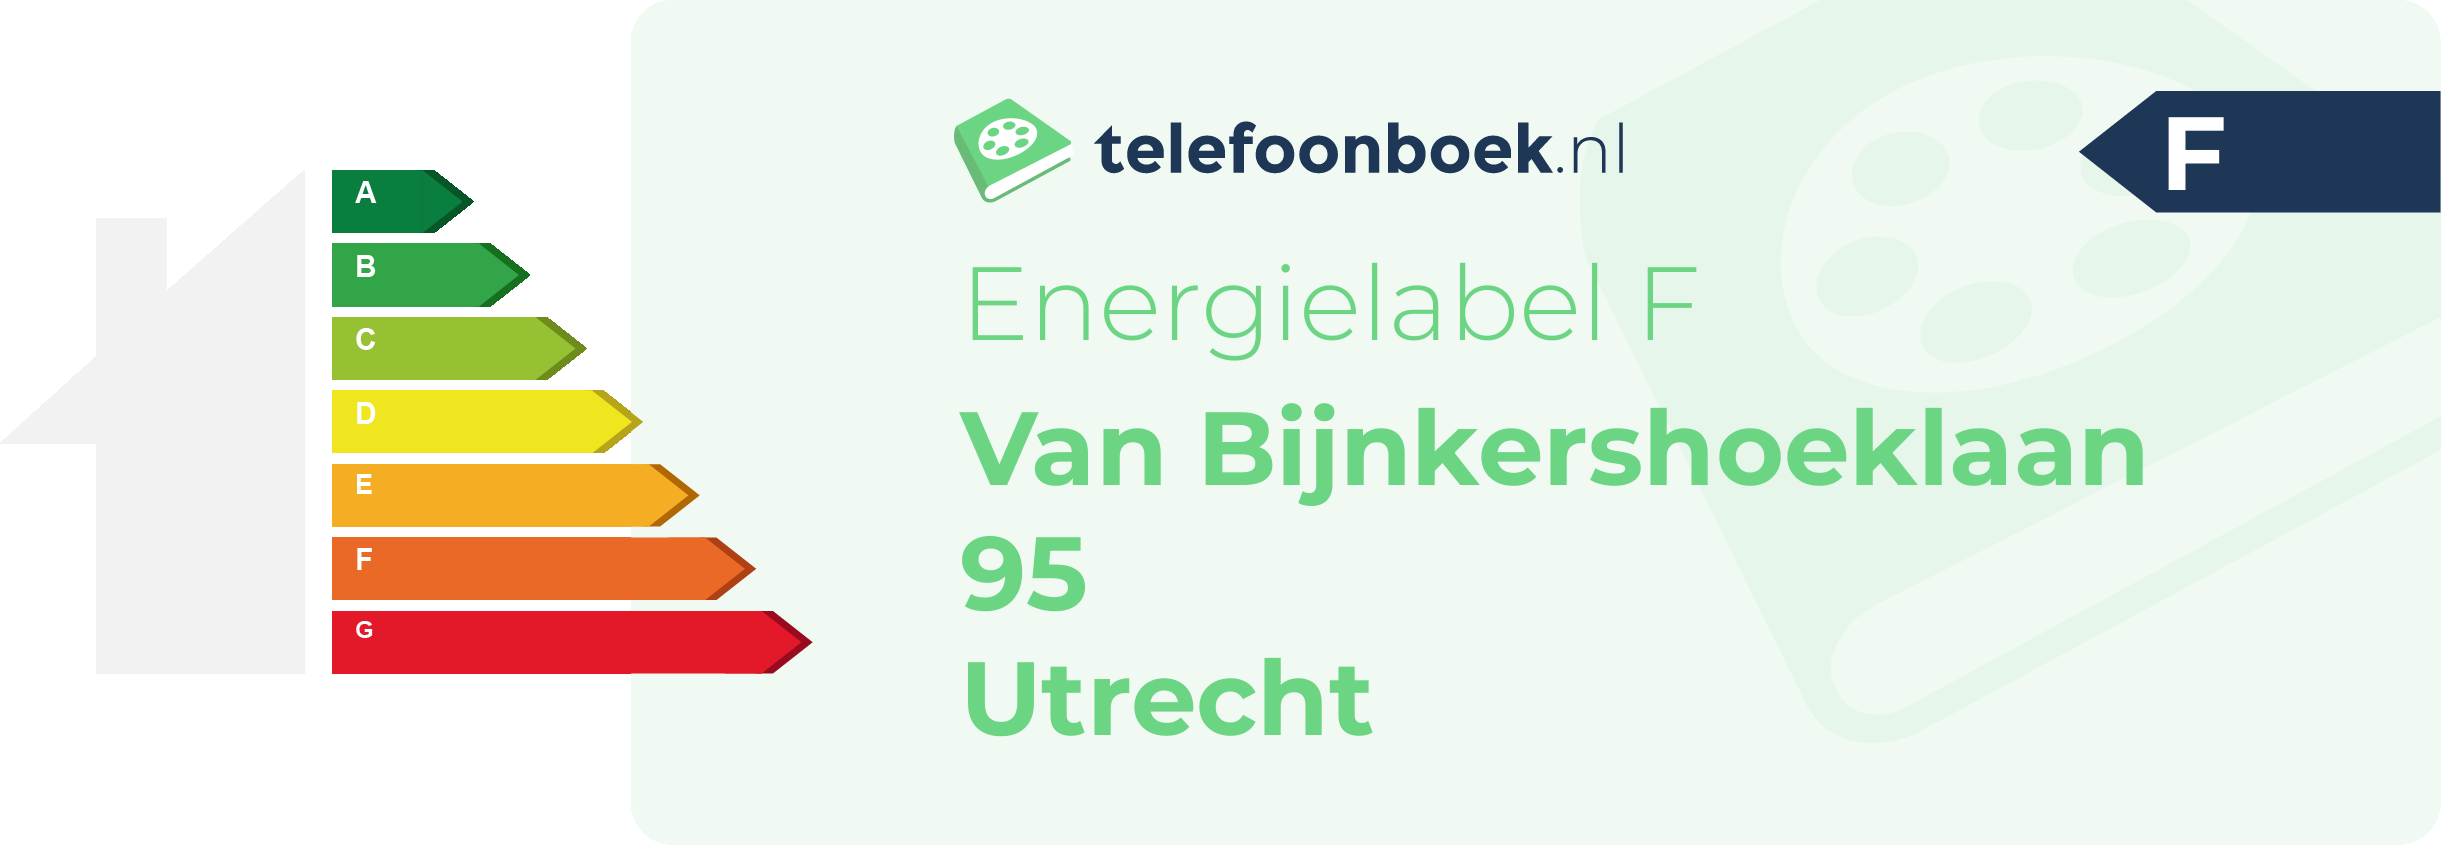 Energielabel Van Bijnkershoeklaan 95 Utrecht